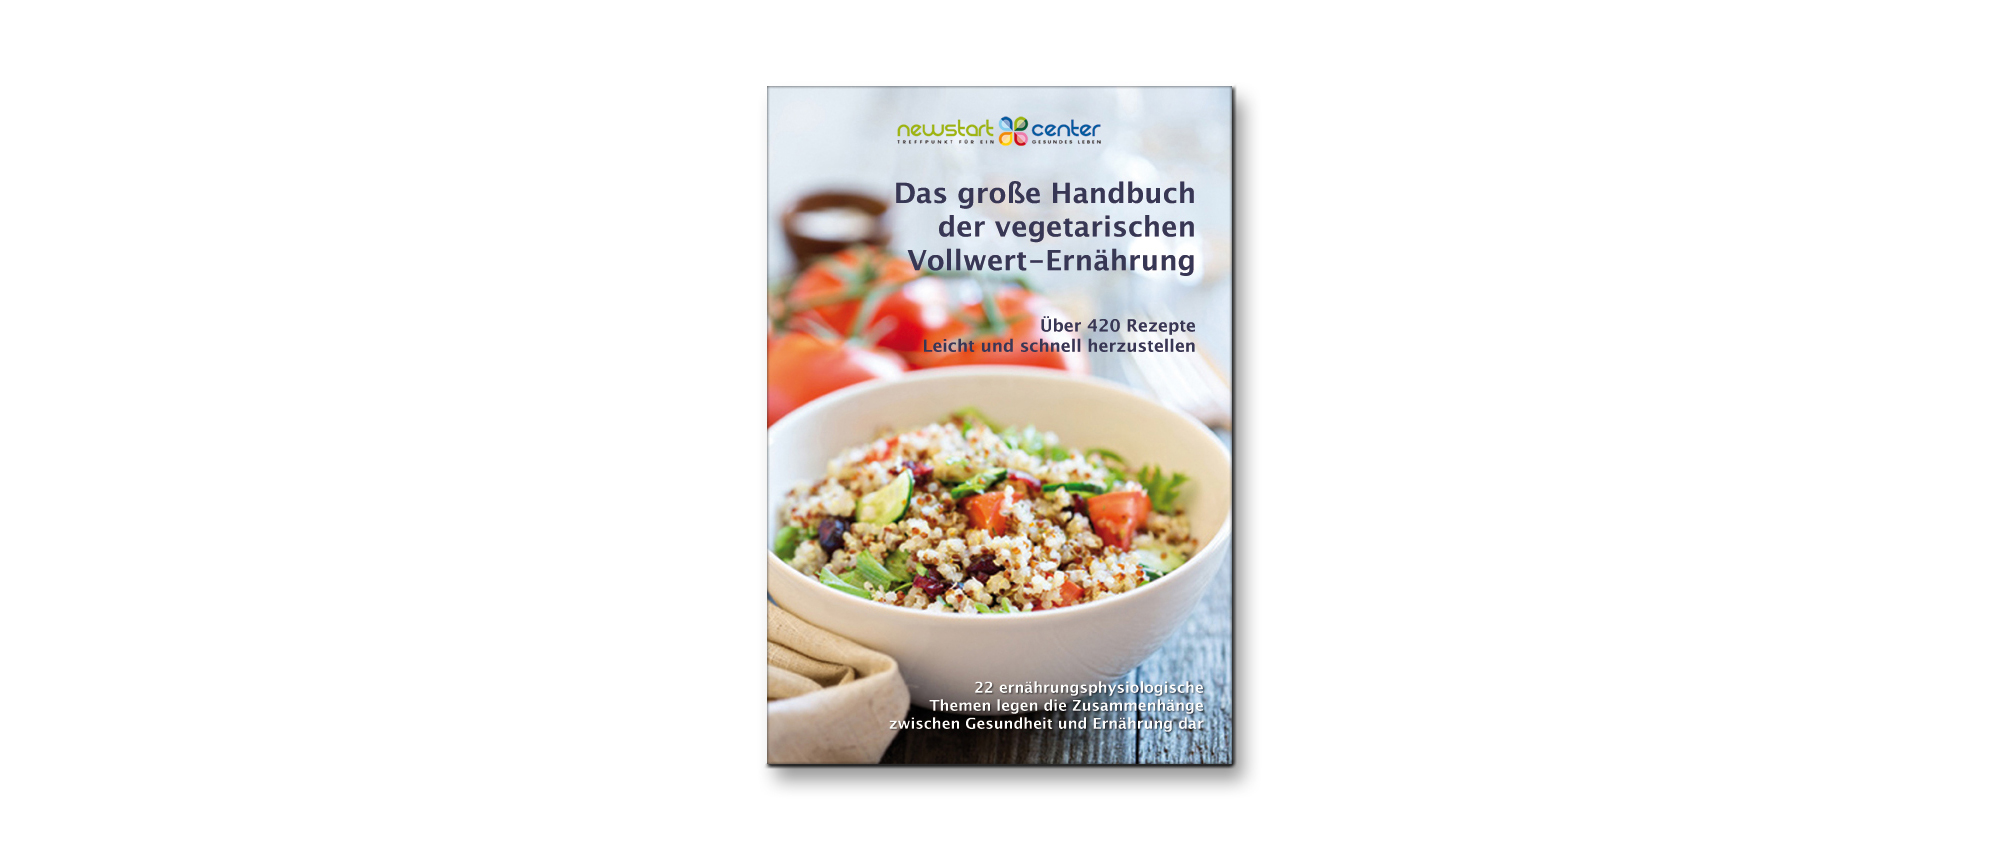 Das große Handbuch der vegetarischen Vollwert-Ernährung